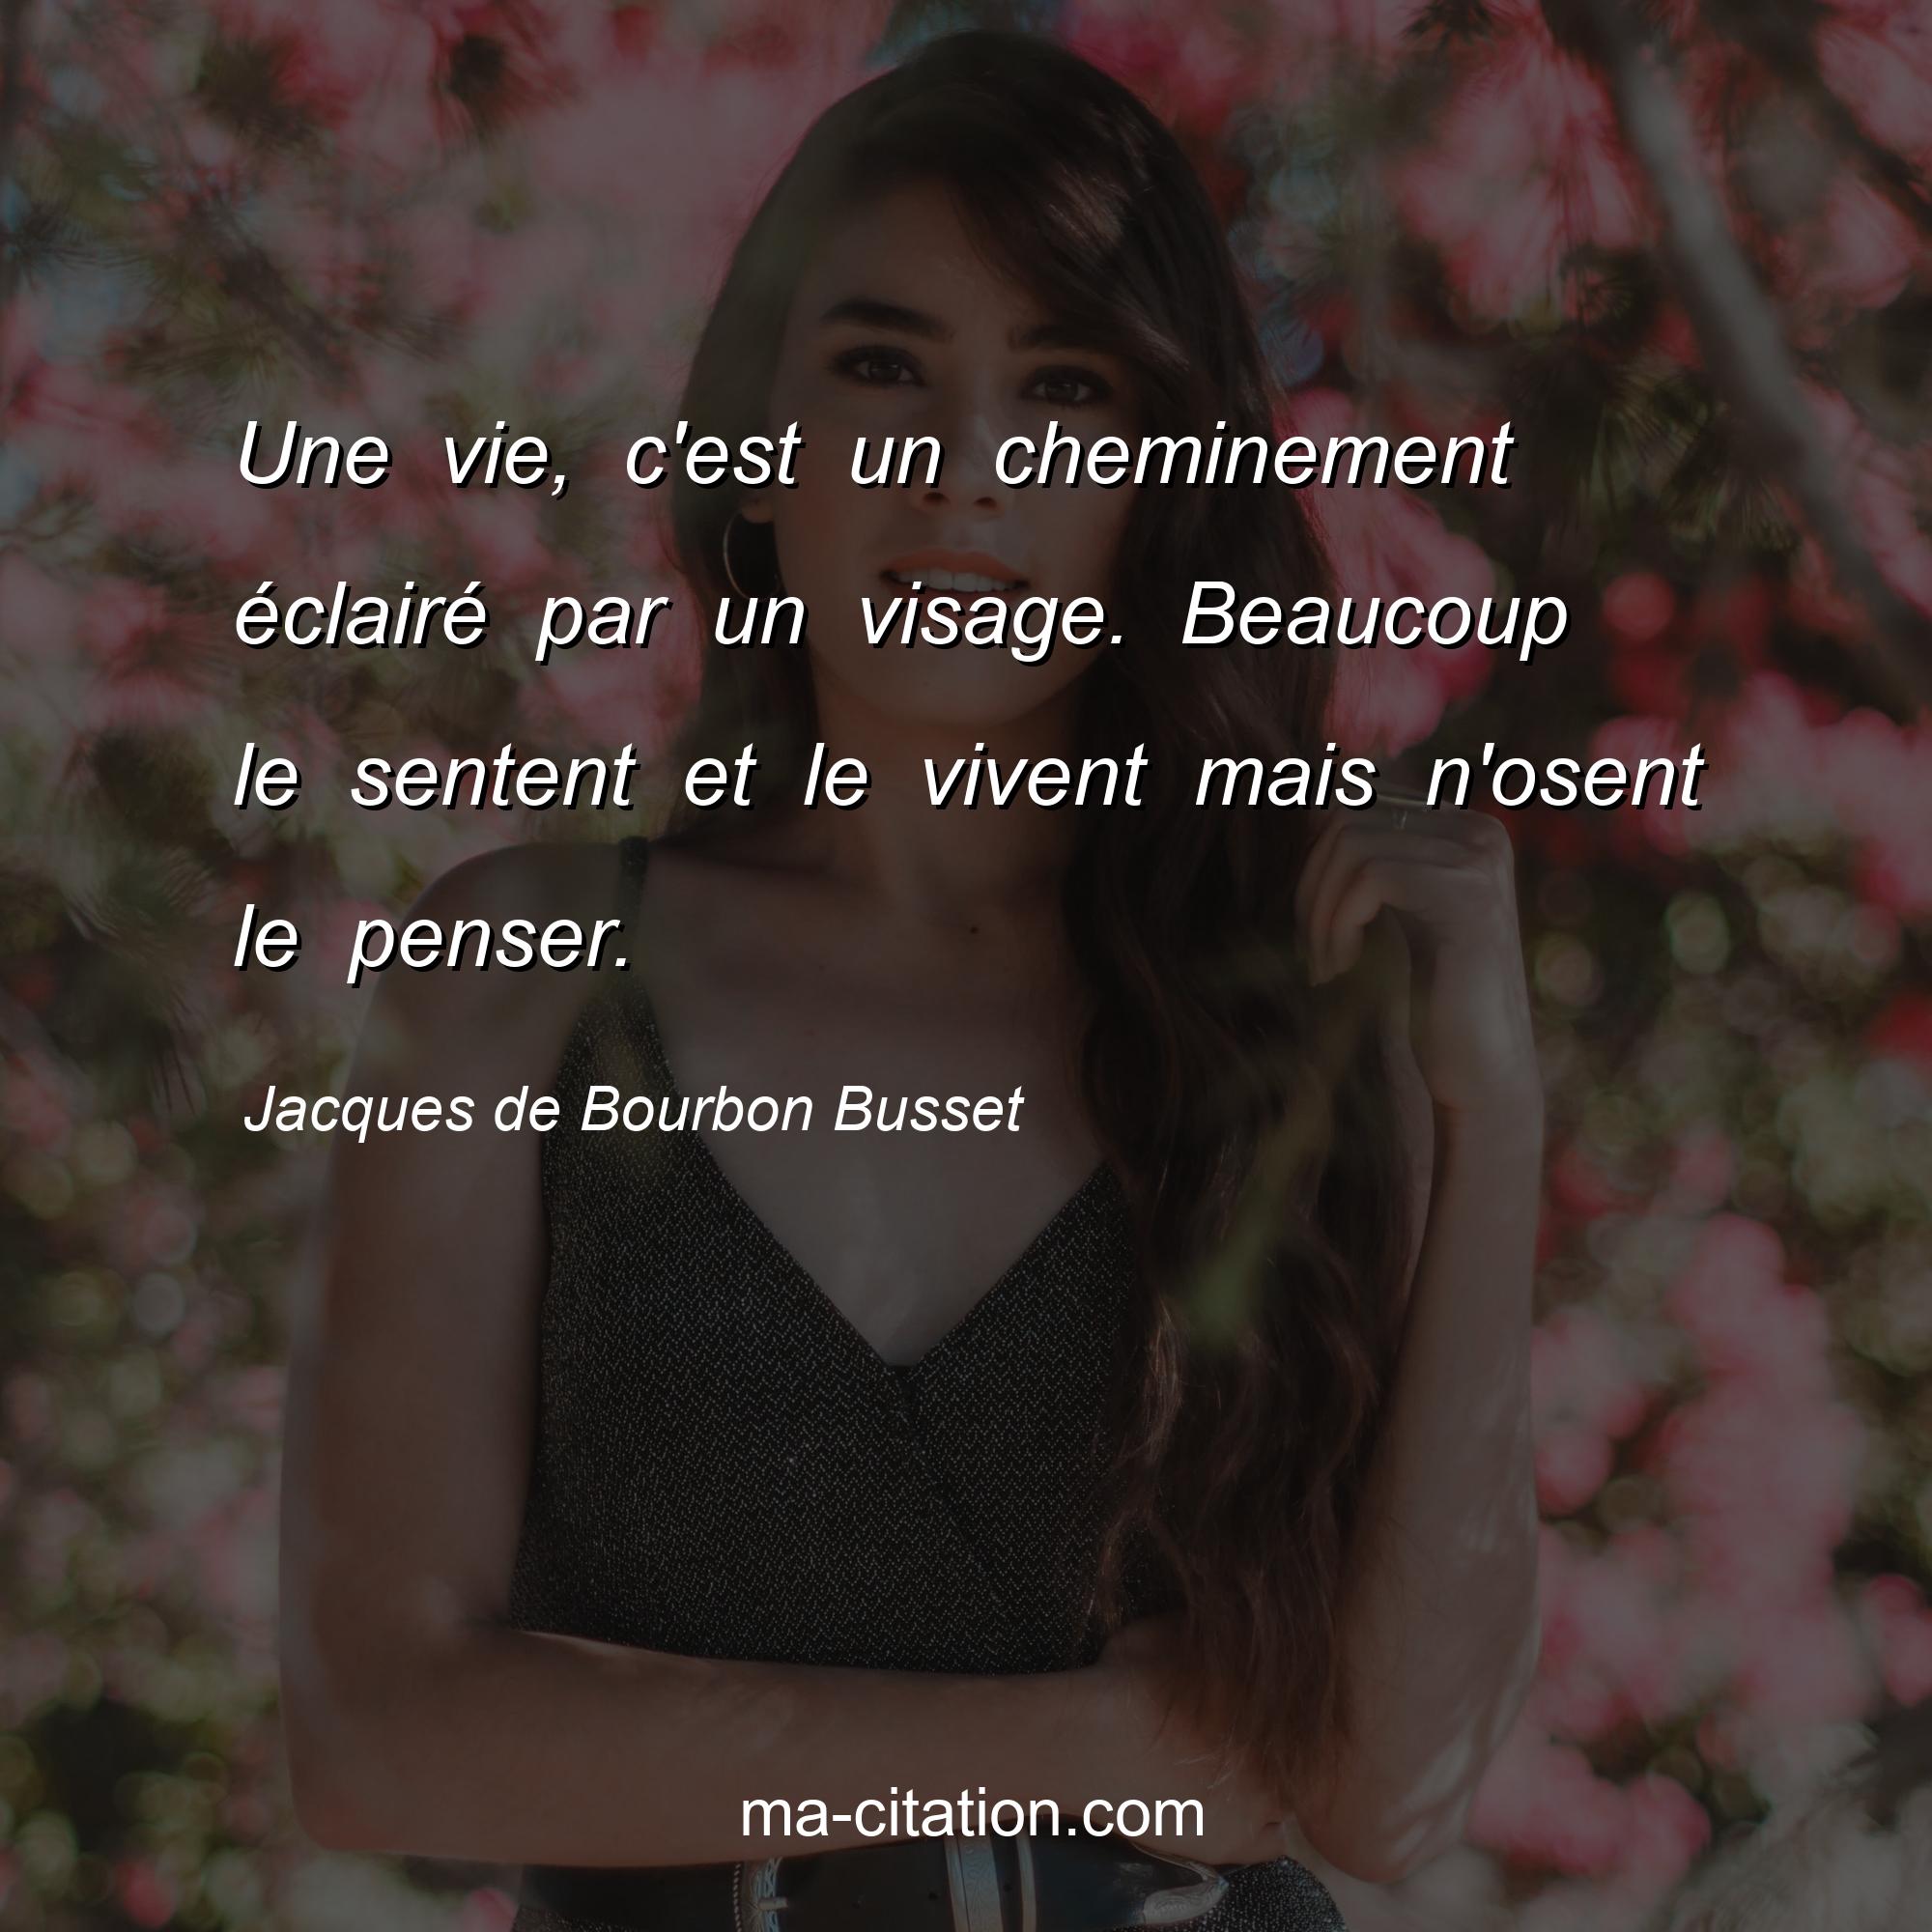 Jacques de Bourbon Busset : Une vie, c'est un cheminement éclairé par un visage. Beaucoup le sentent et le vivent mais n'osent le penser.